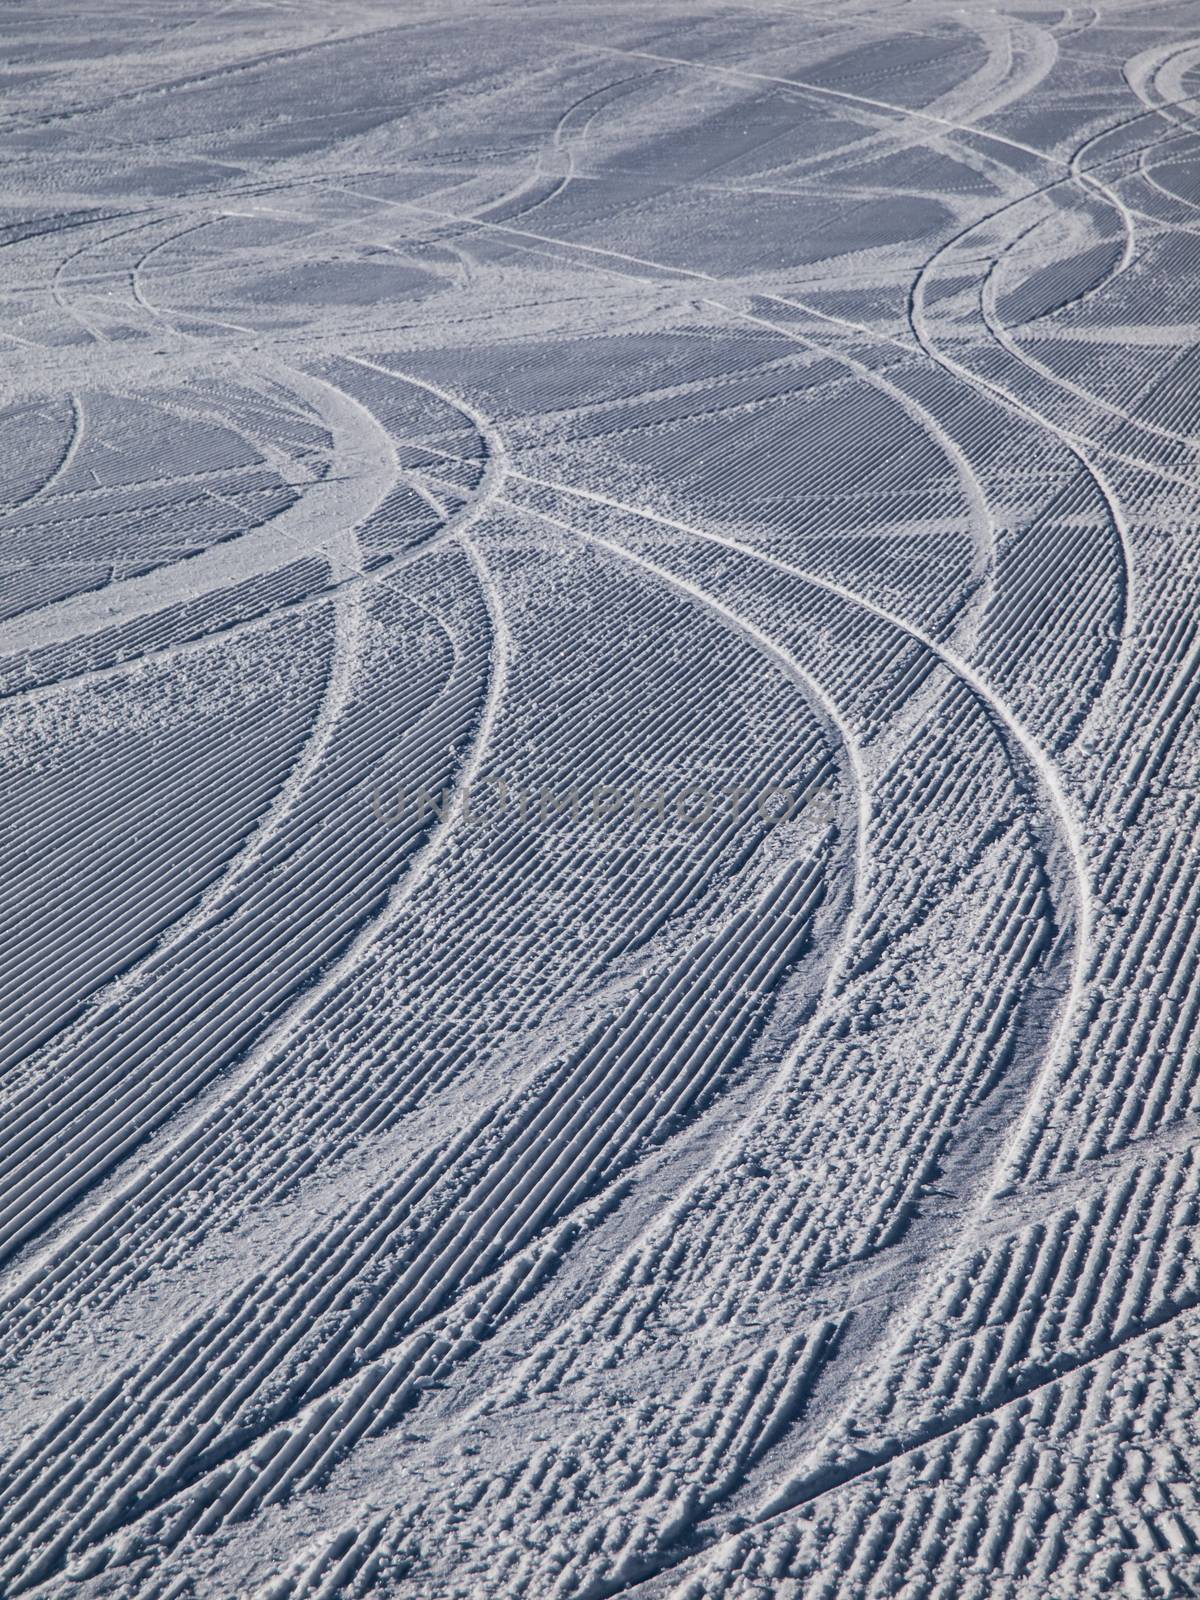 Downhill ski tracks on ski slope by pyty